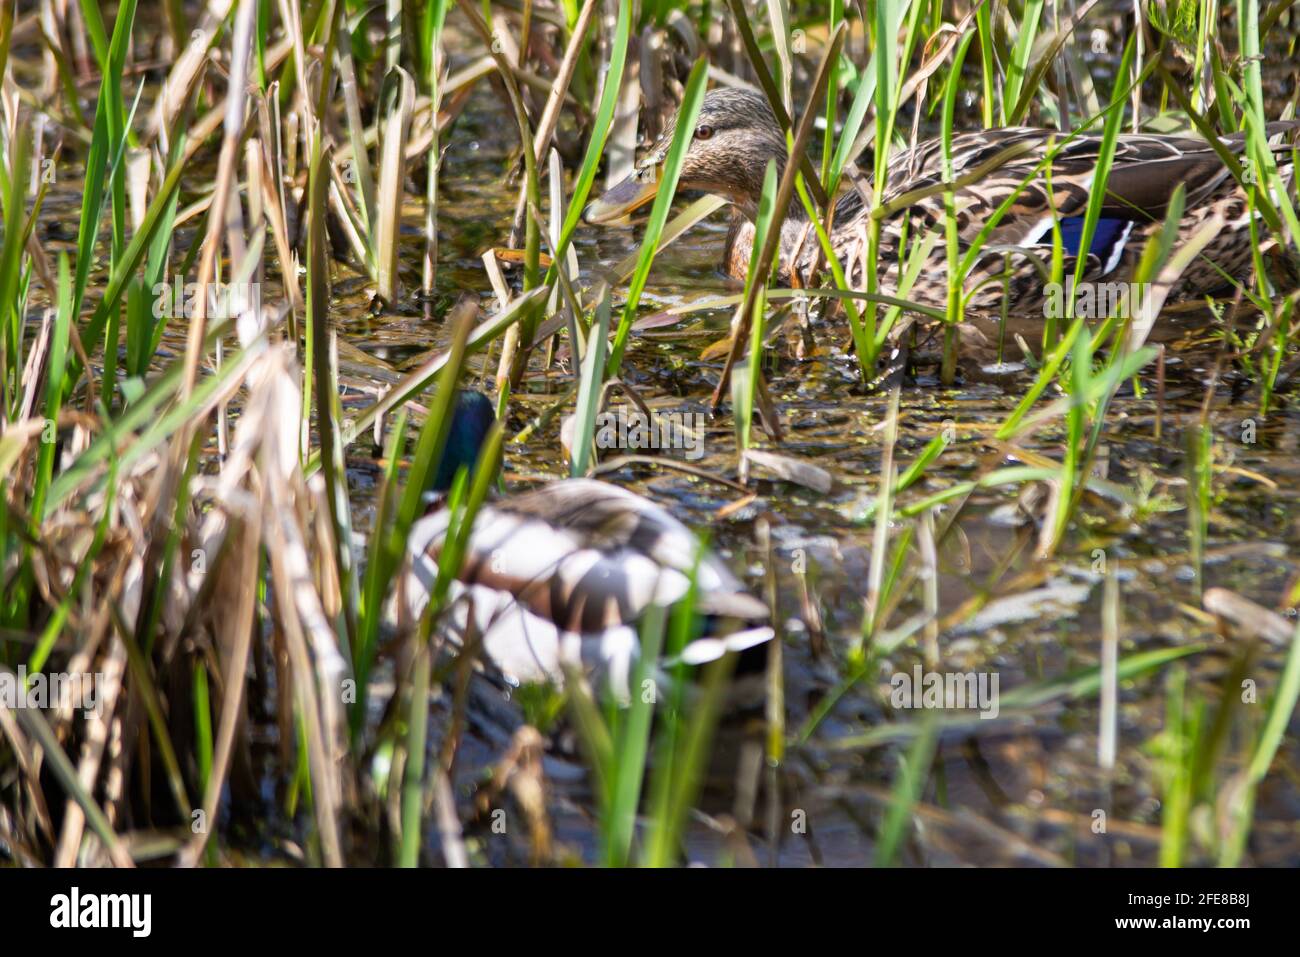 Canard sauvage mâle et femelle nageant dans un étang avec L'eau verte et les herbes vertes à la recherche de nourriture.Animal photographie Banque D'Images